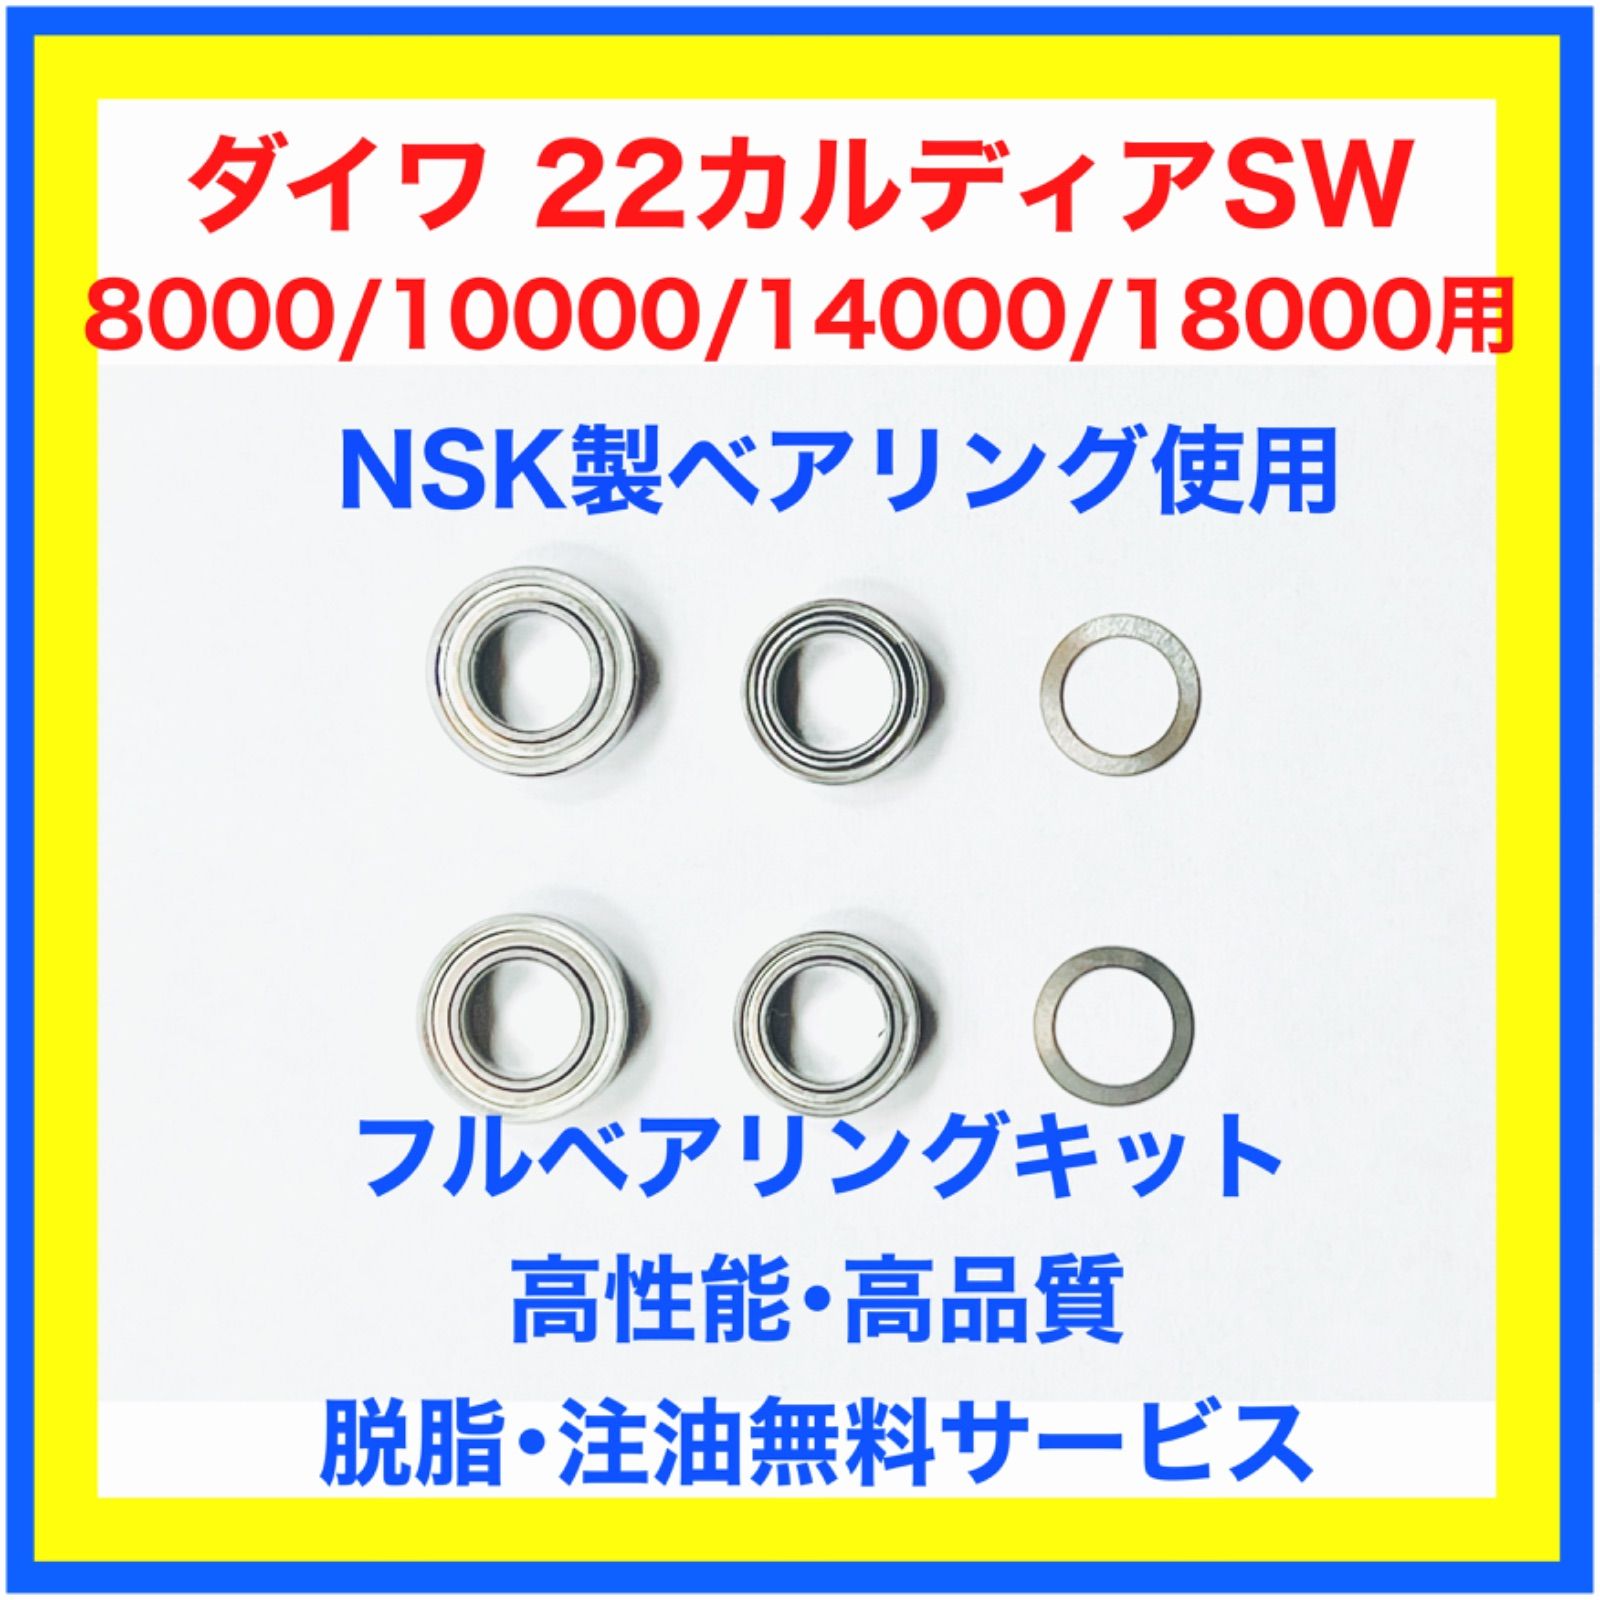 高品質NSK製22カルディアSW8000～18000用フルベアリングキット